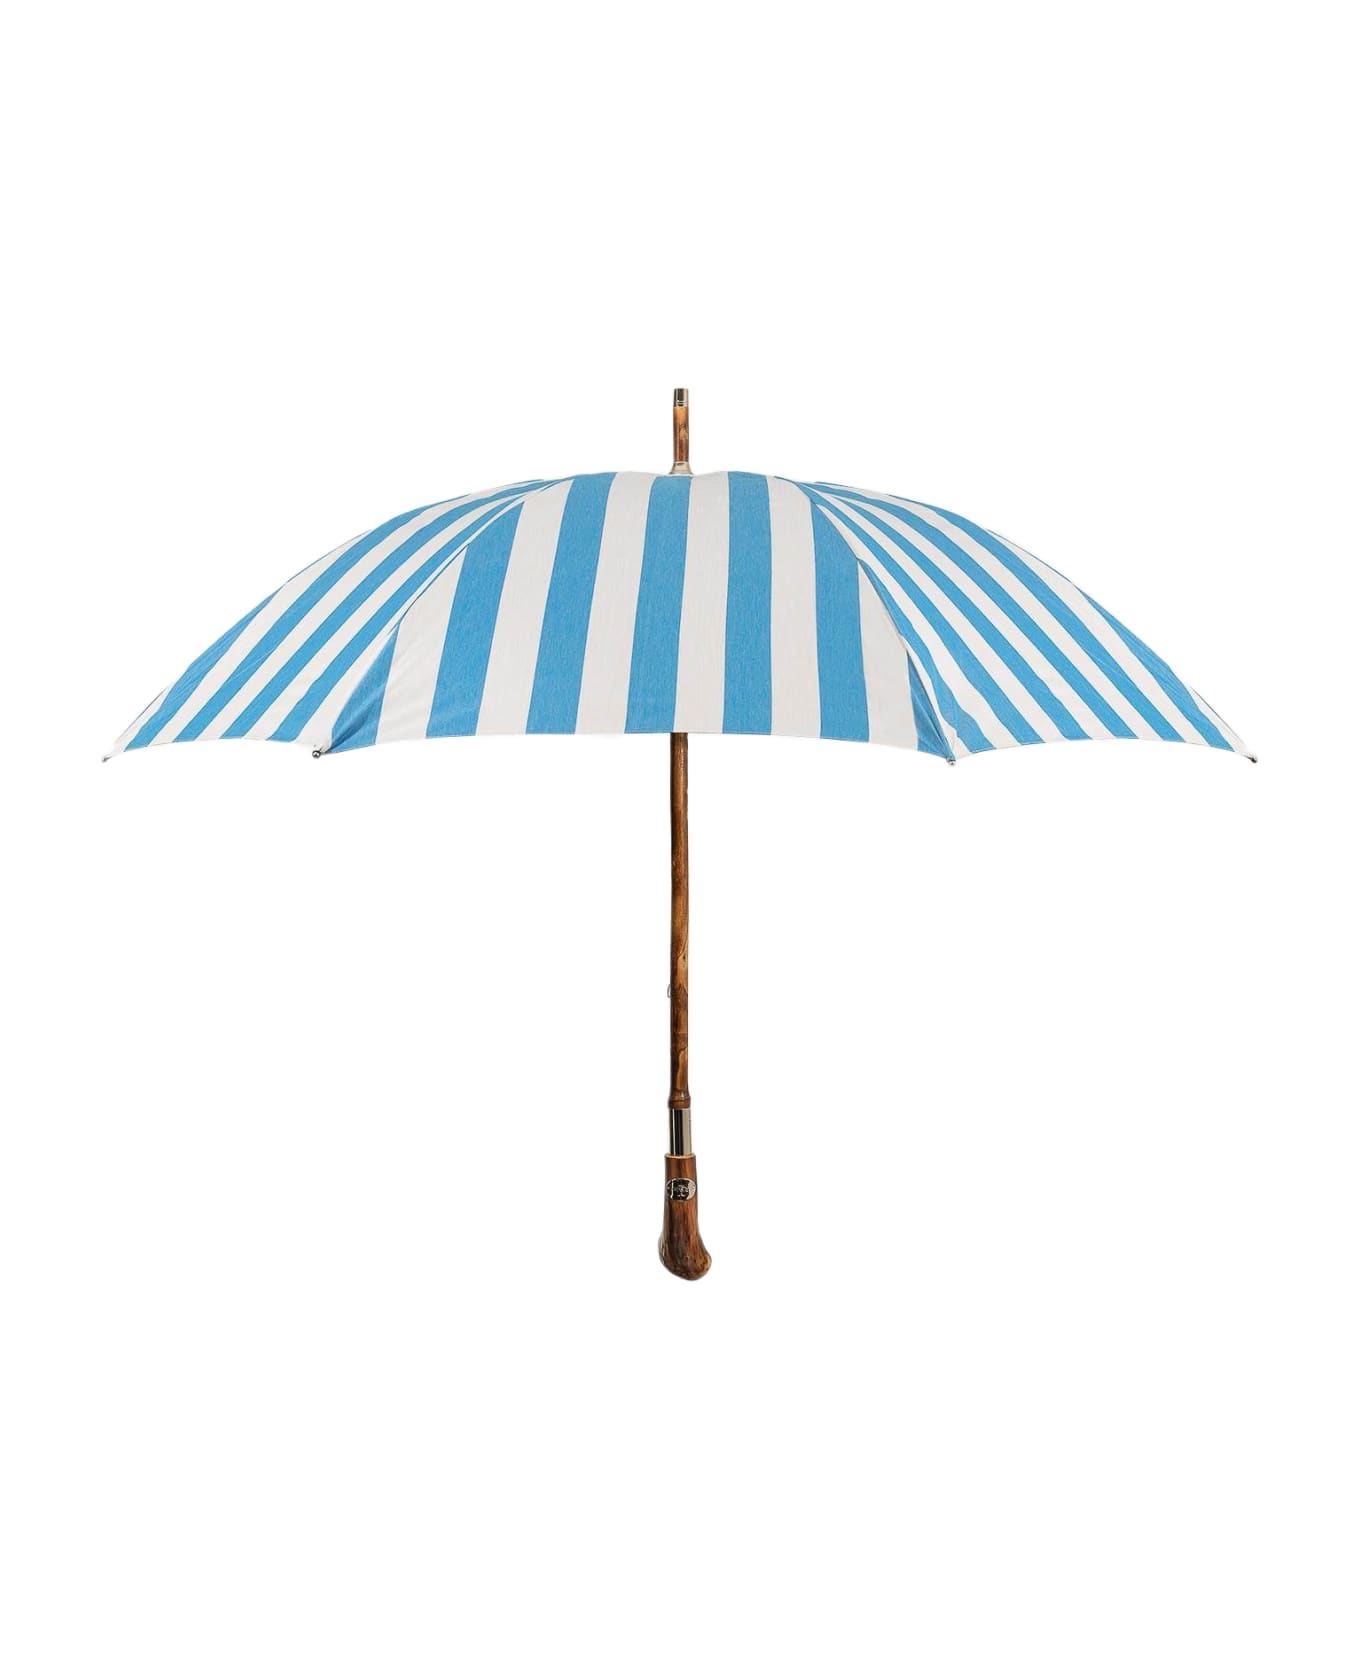 Larusmiani Umbrella 'pic Nic' Umbrella - LightBlue